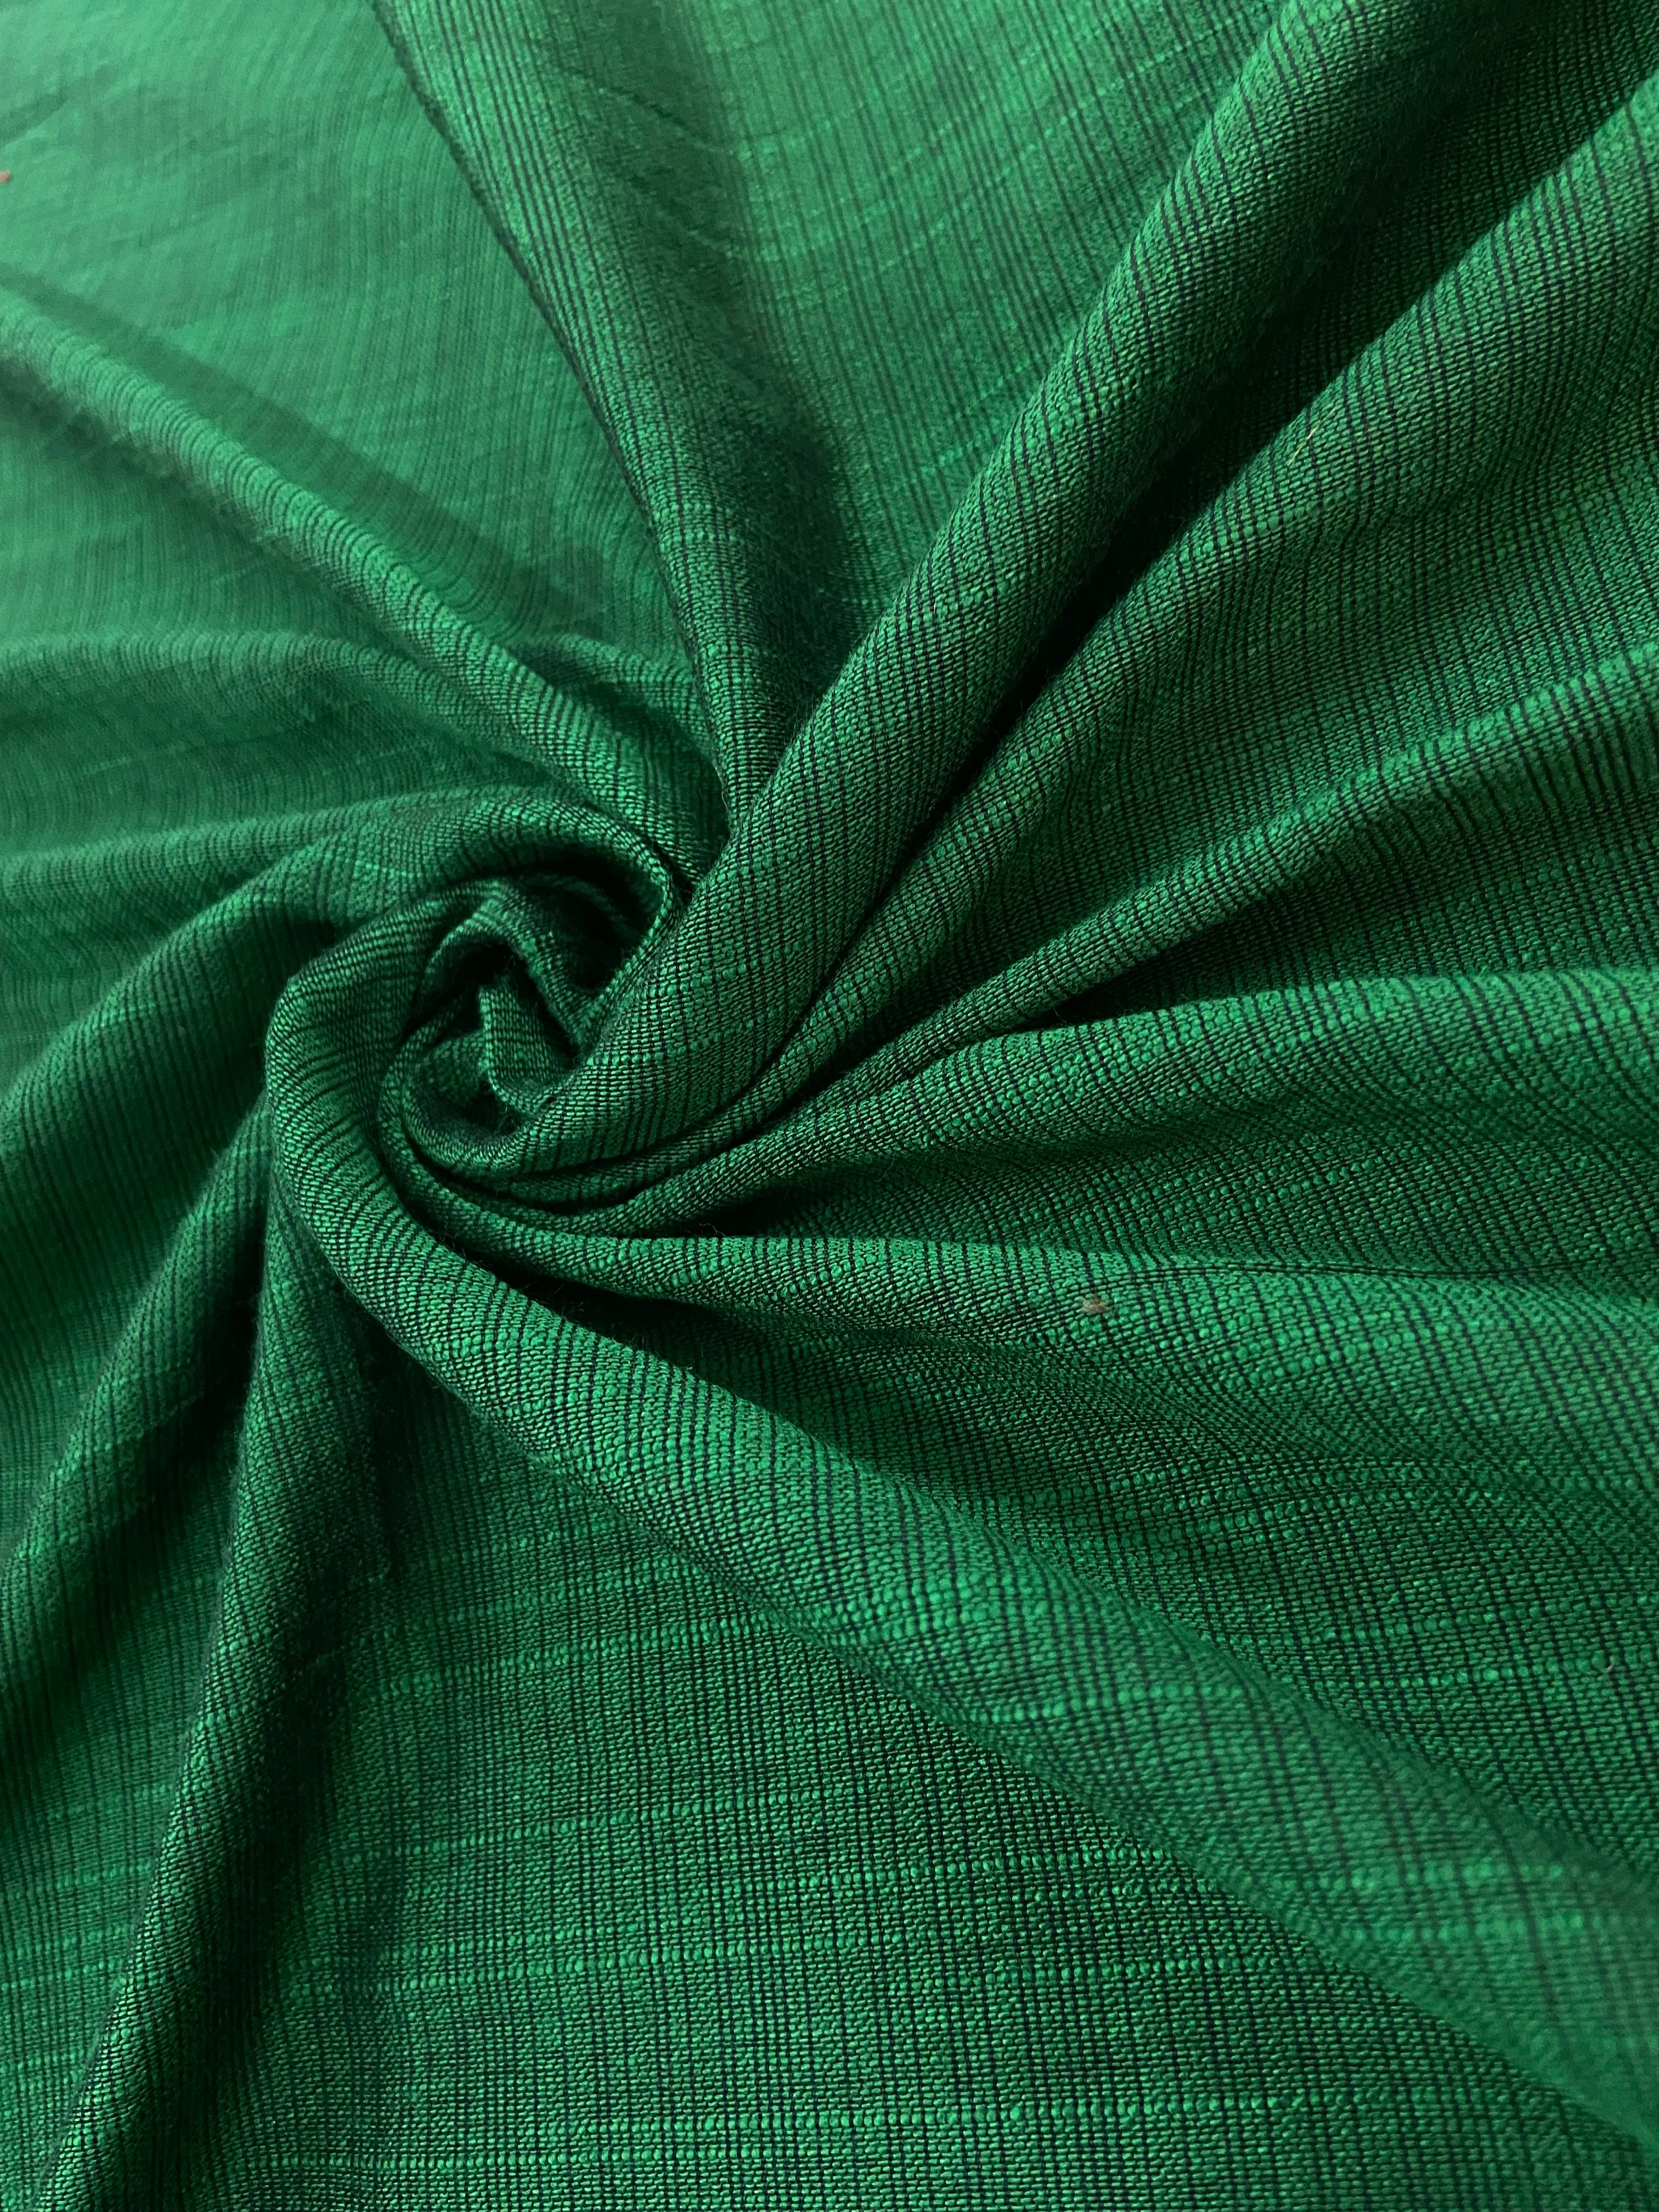 Fabric #017